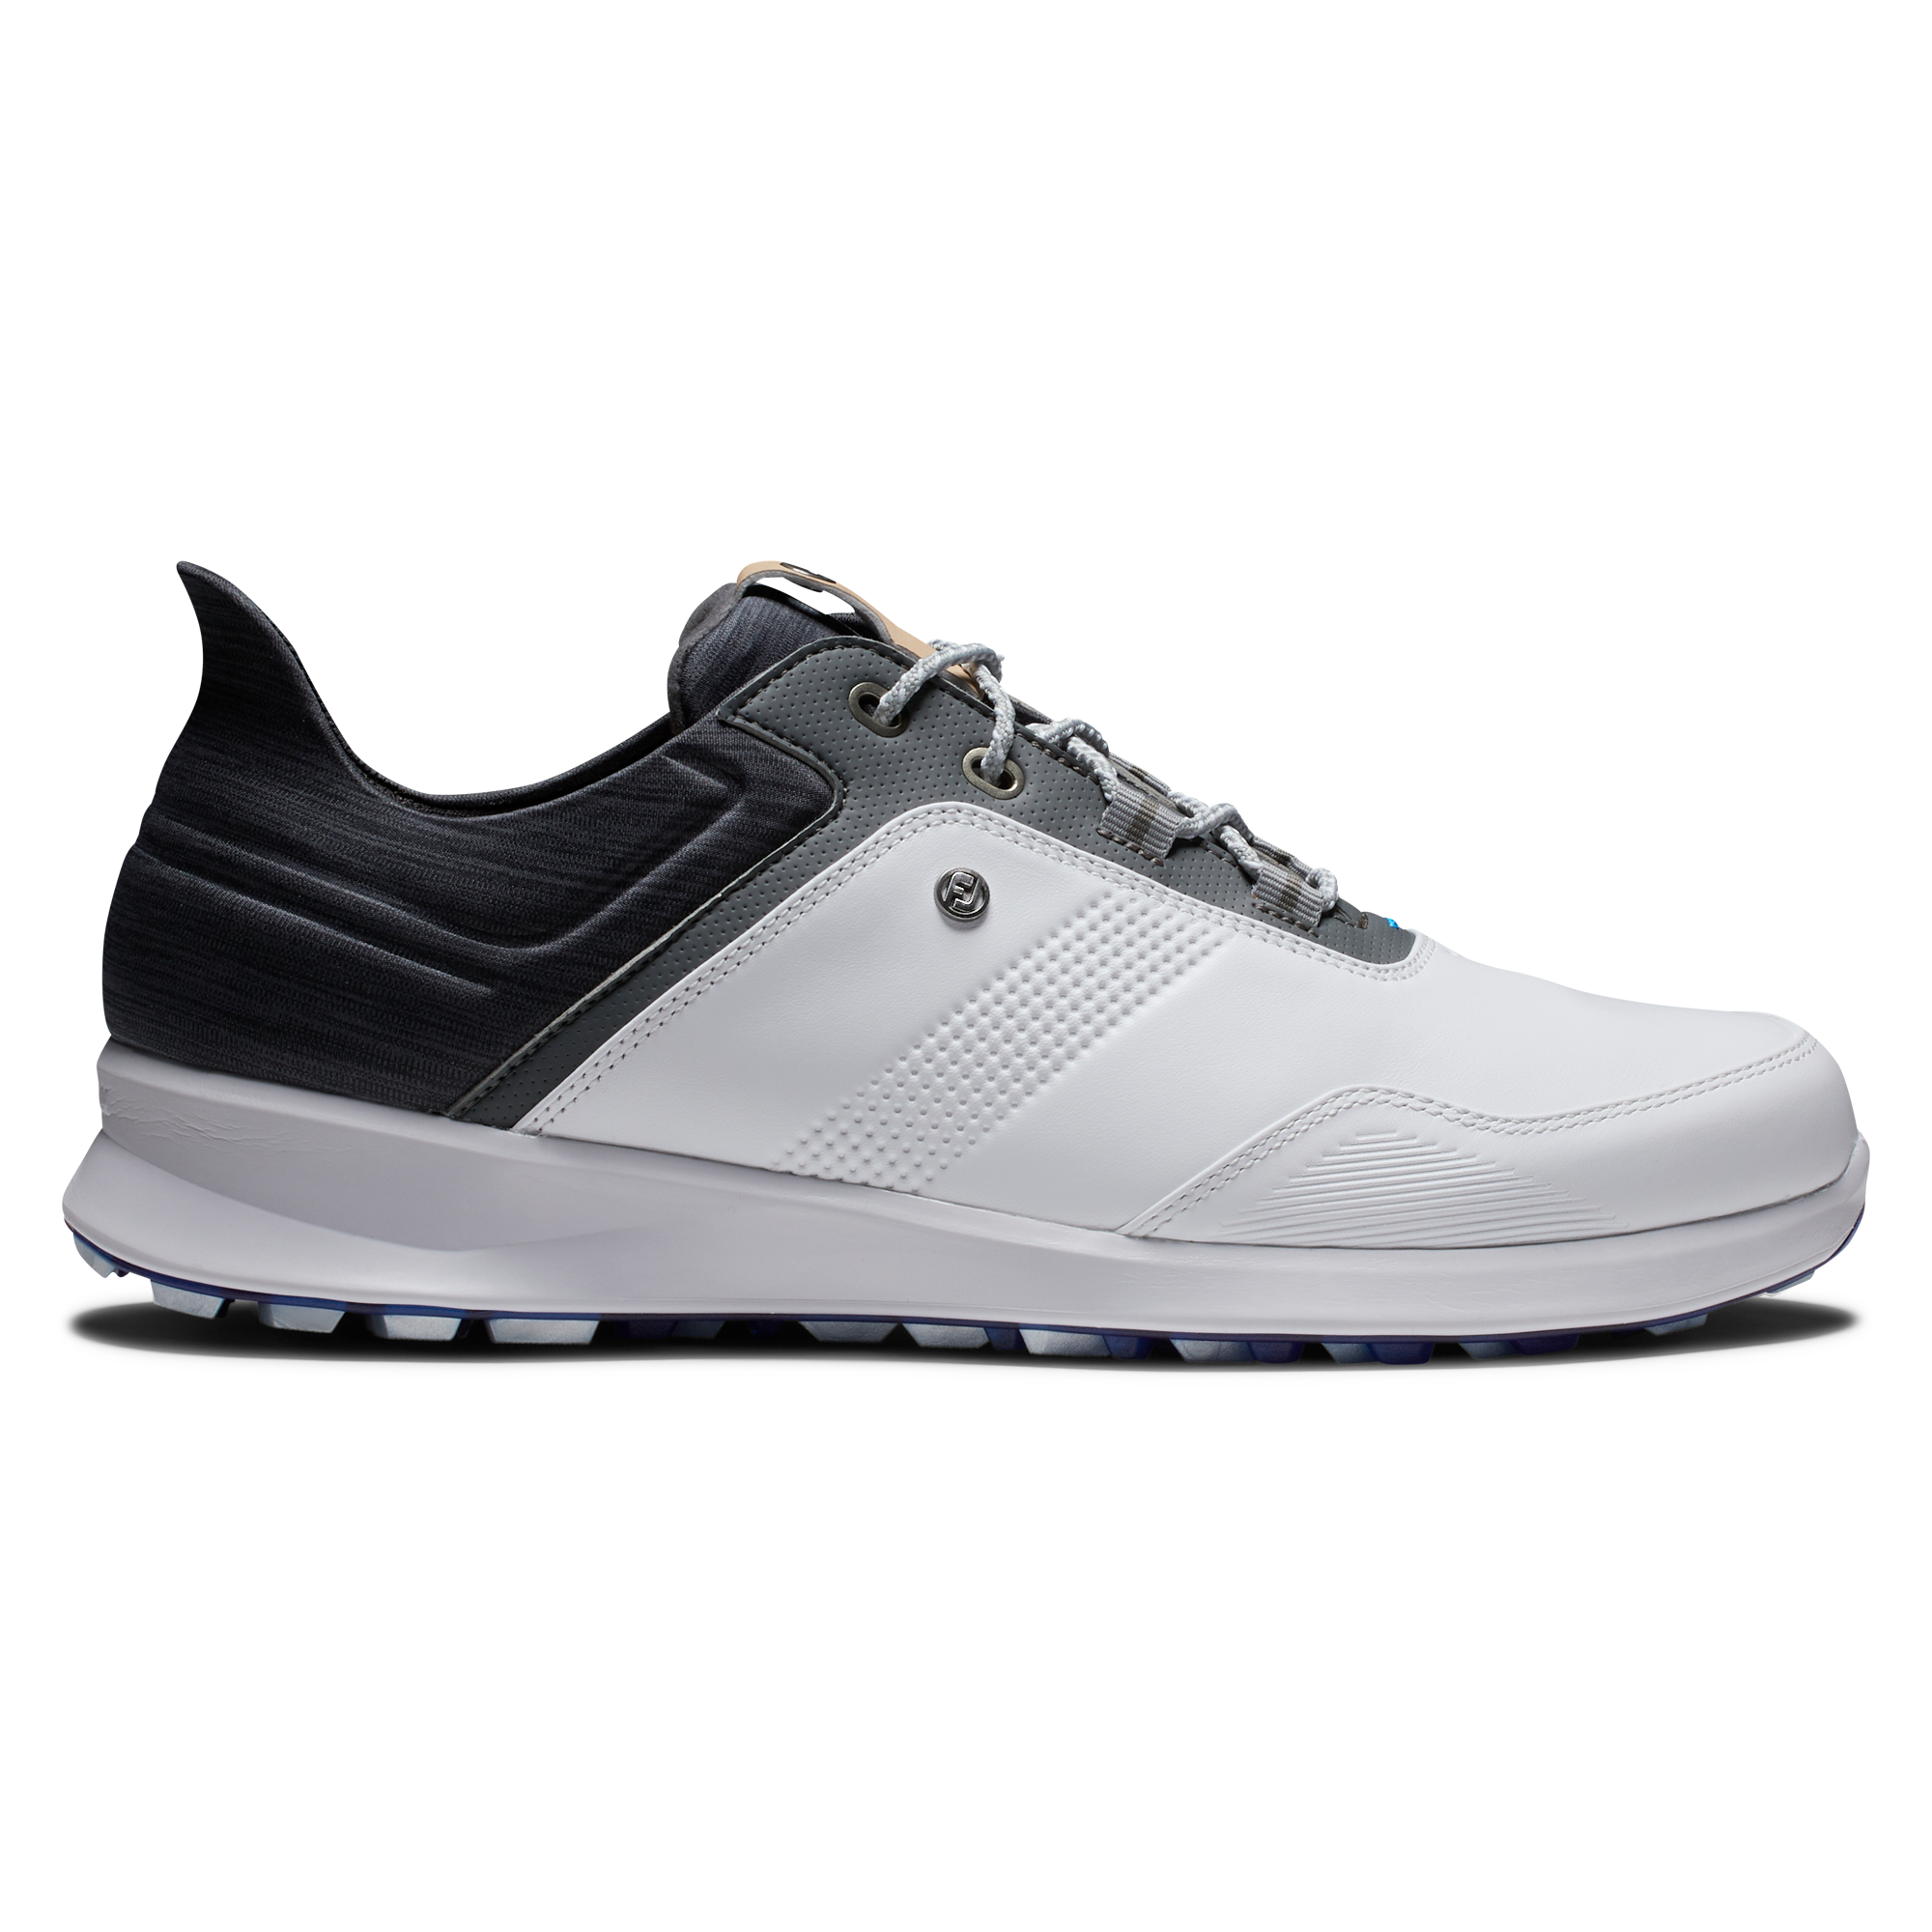 FootJoy Stratos pánské golfové boty, bílé/šedé, vel. 8 UK